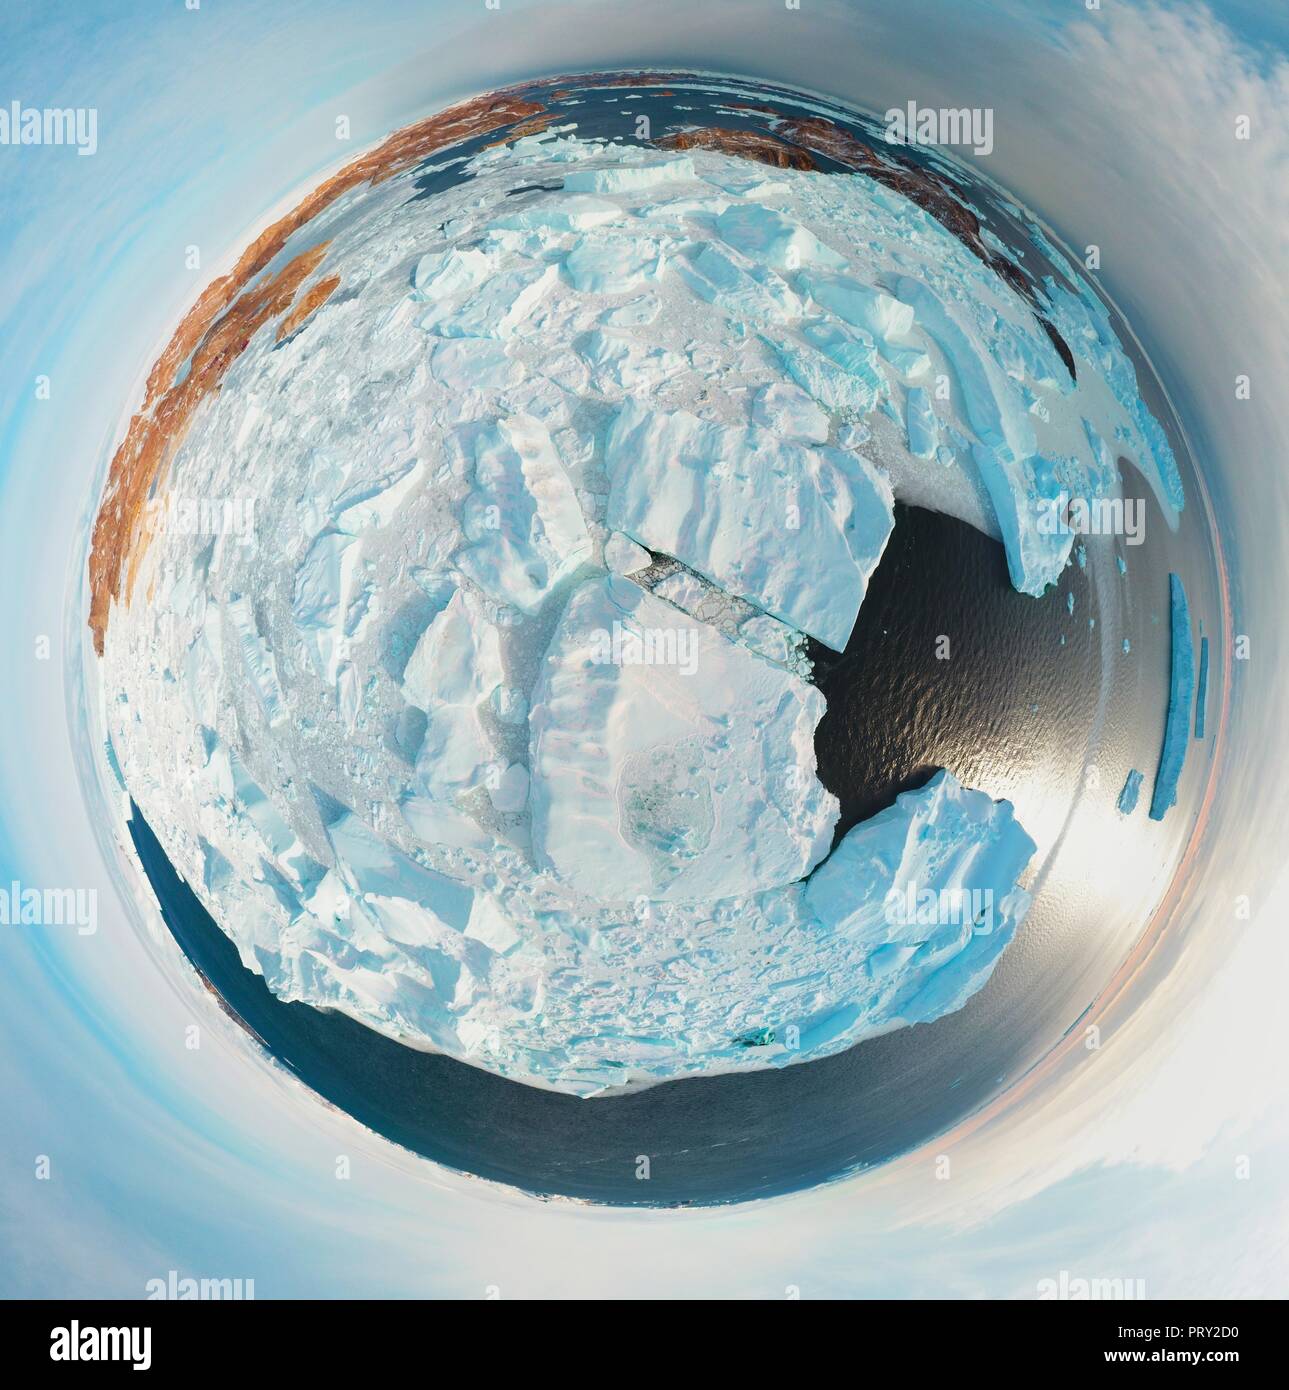 Panorama circulaire et juste .de l'air sur la banquise, le relief et les paysages .Antarctique Lever du Soleil, le jour, le coucher du soleil. Tournage avec quadrocopter. Banque D'Images